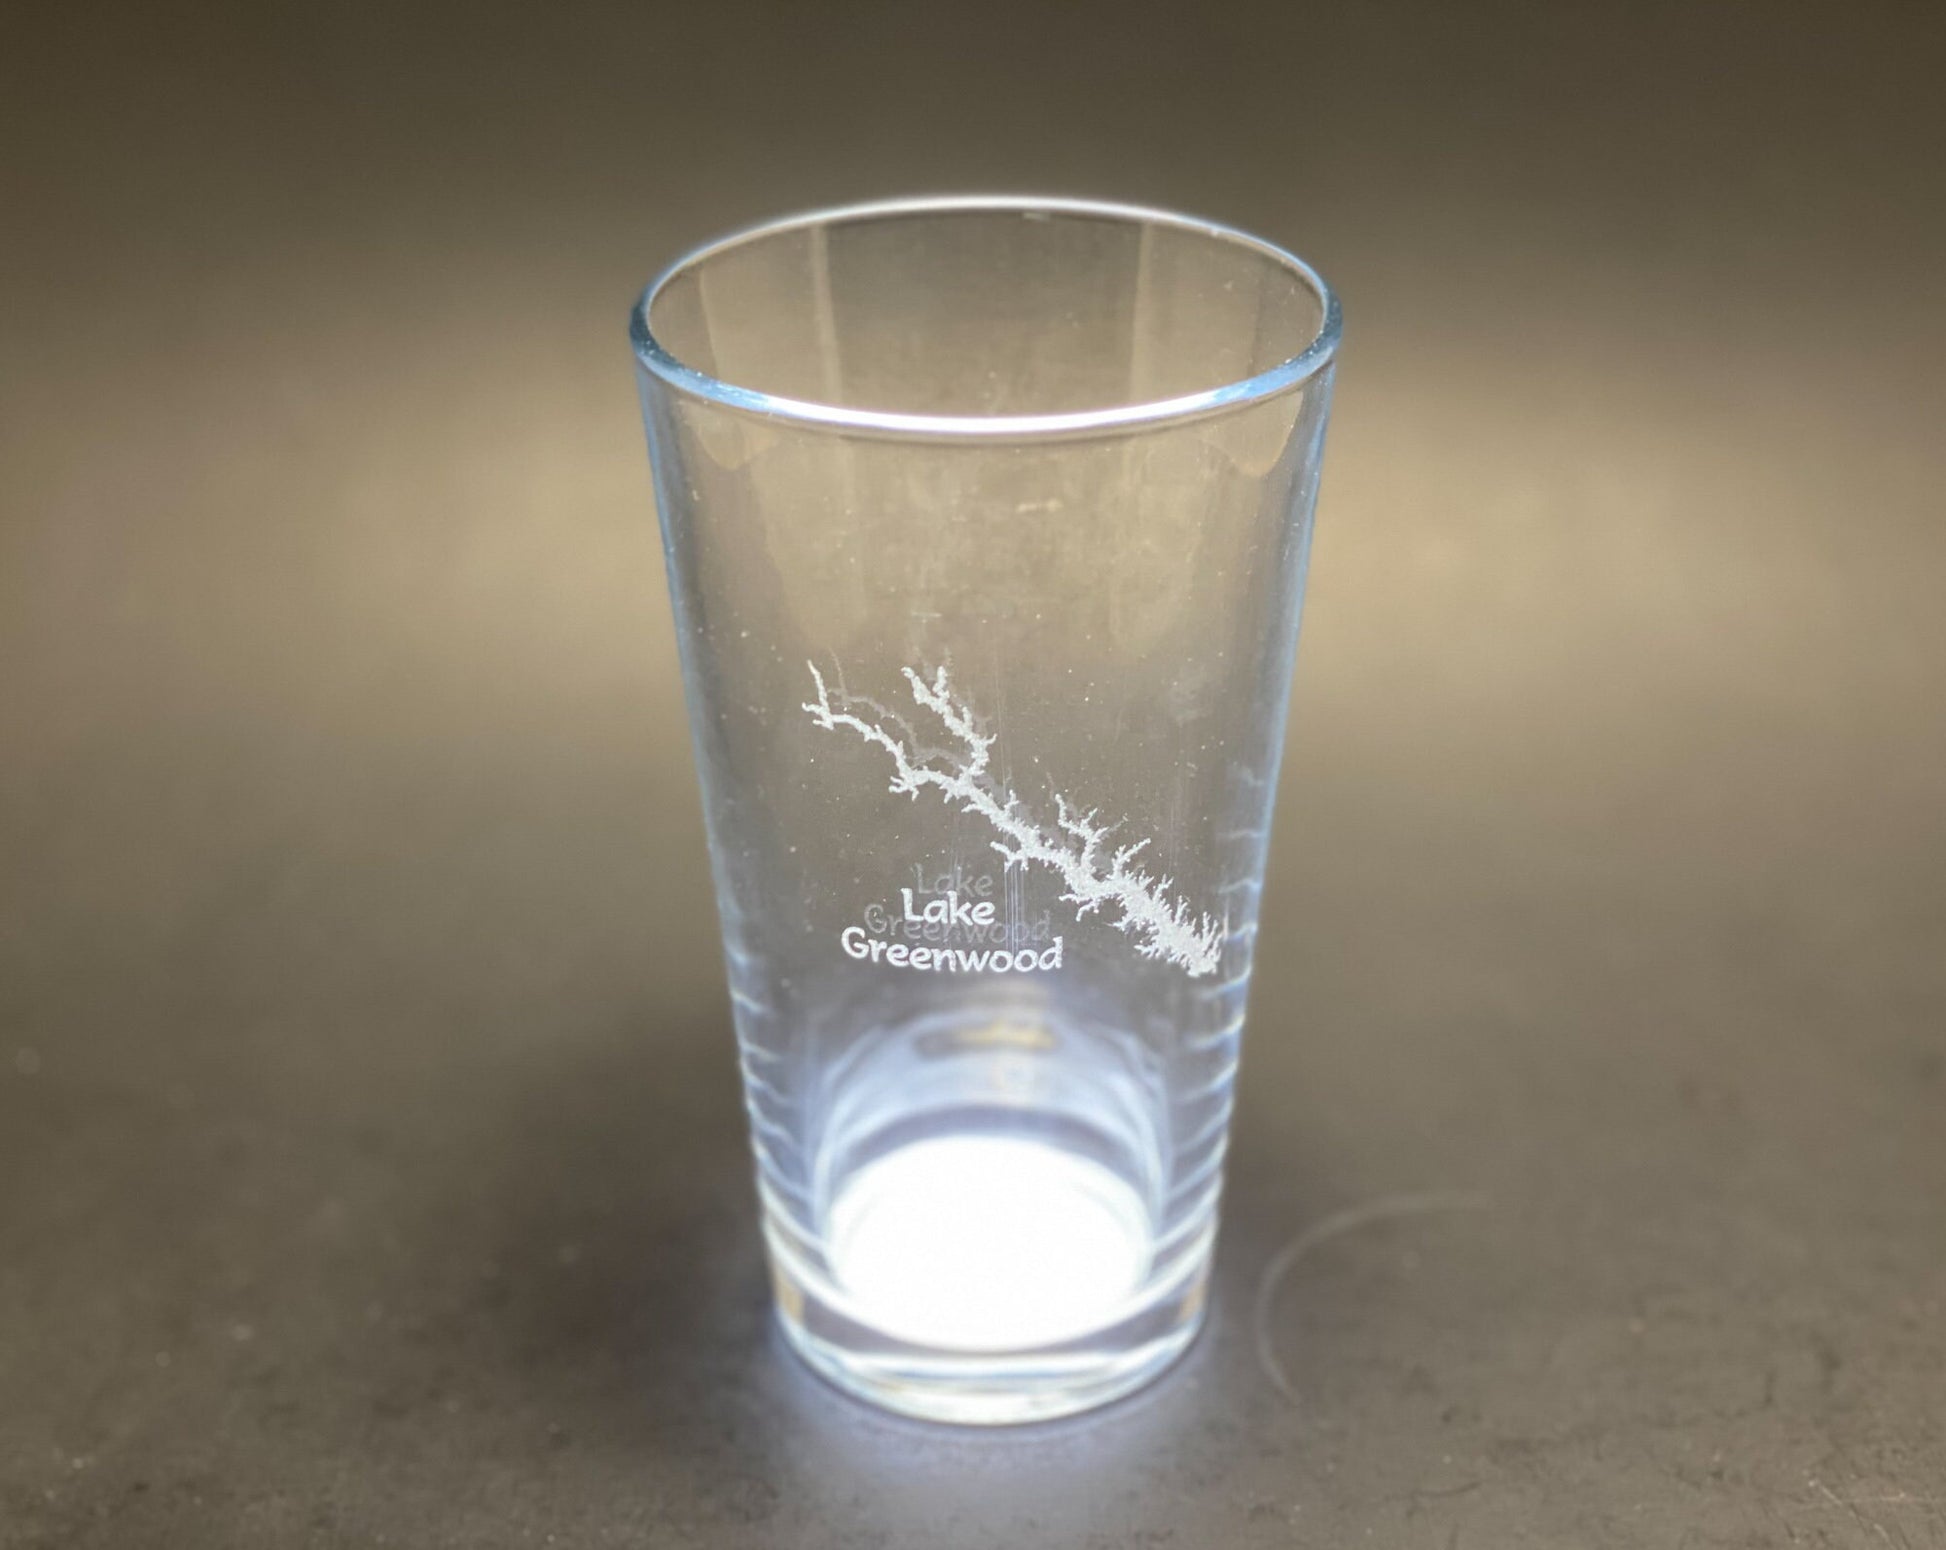 Lake Greenwood South Carolina - Laser engraved pint glass